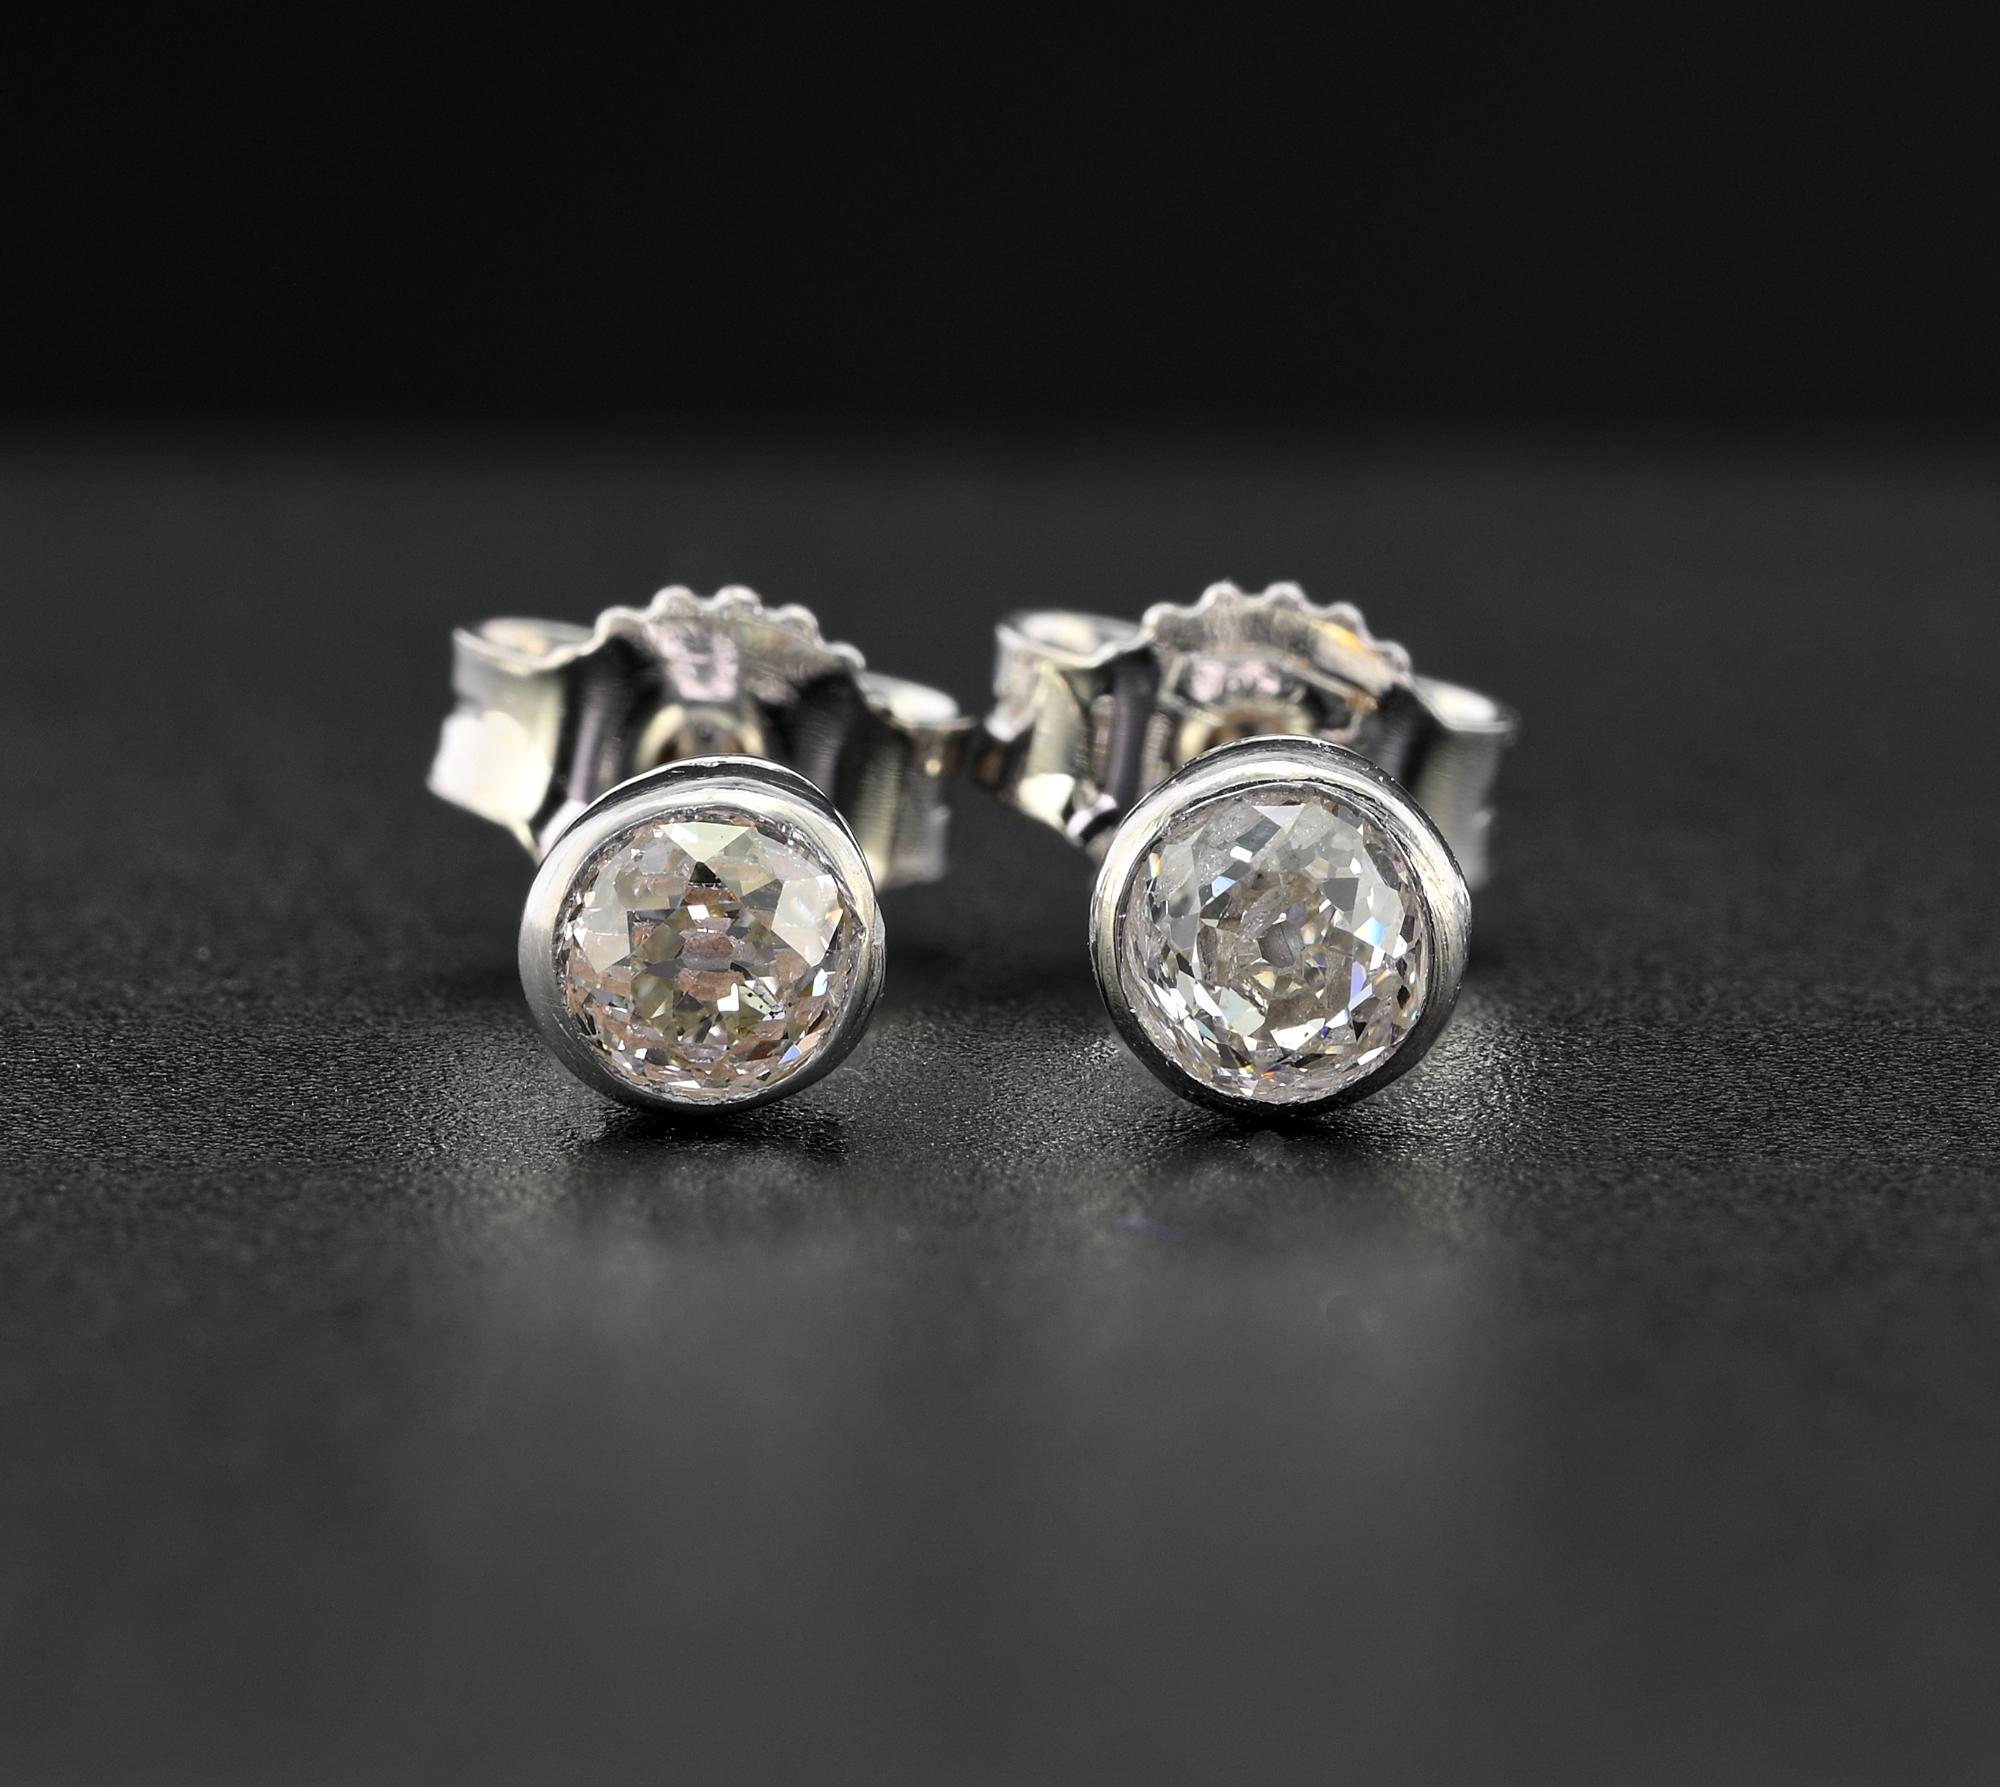 Ces charmantes boucles d'oreilles en diamant de style Art déco datent de 1920 environ.
Fabriqué à la main en platine massif pour la monture et en or blanc 18 carats pour l'épingle et les attaches papillon (nouveau remplacement).
Serti de deux